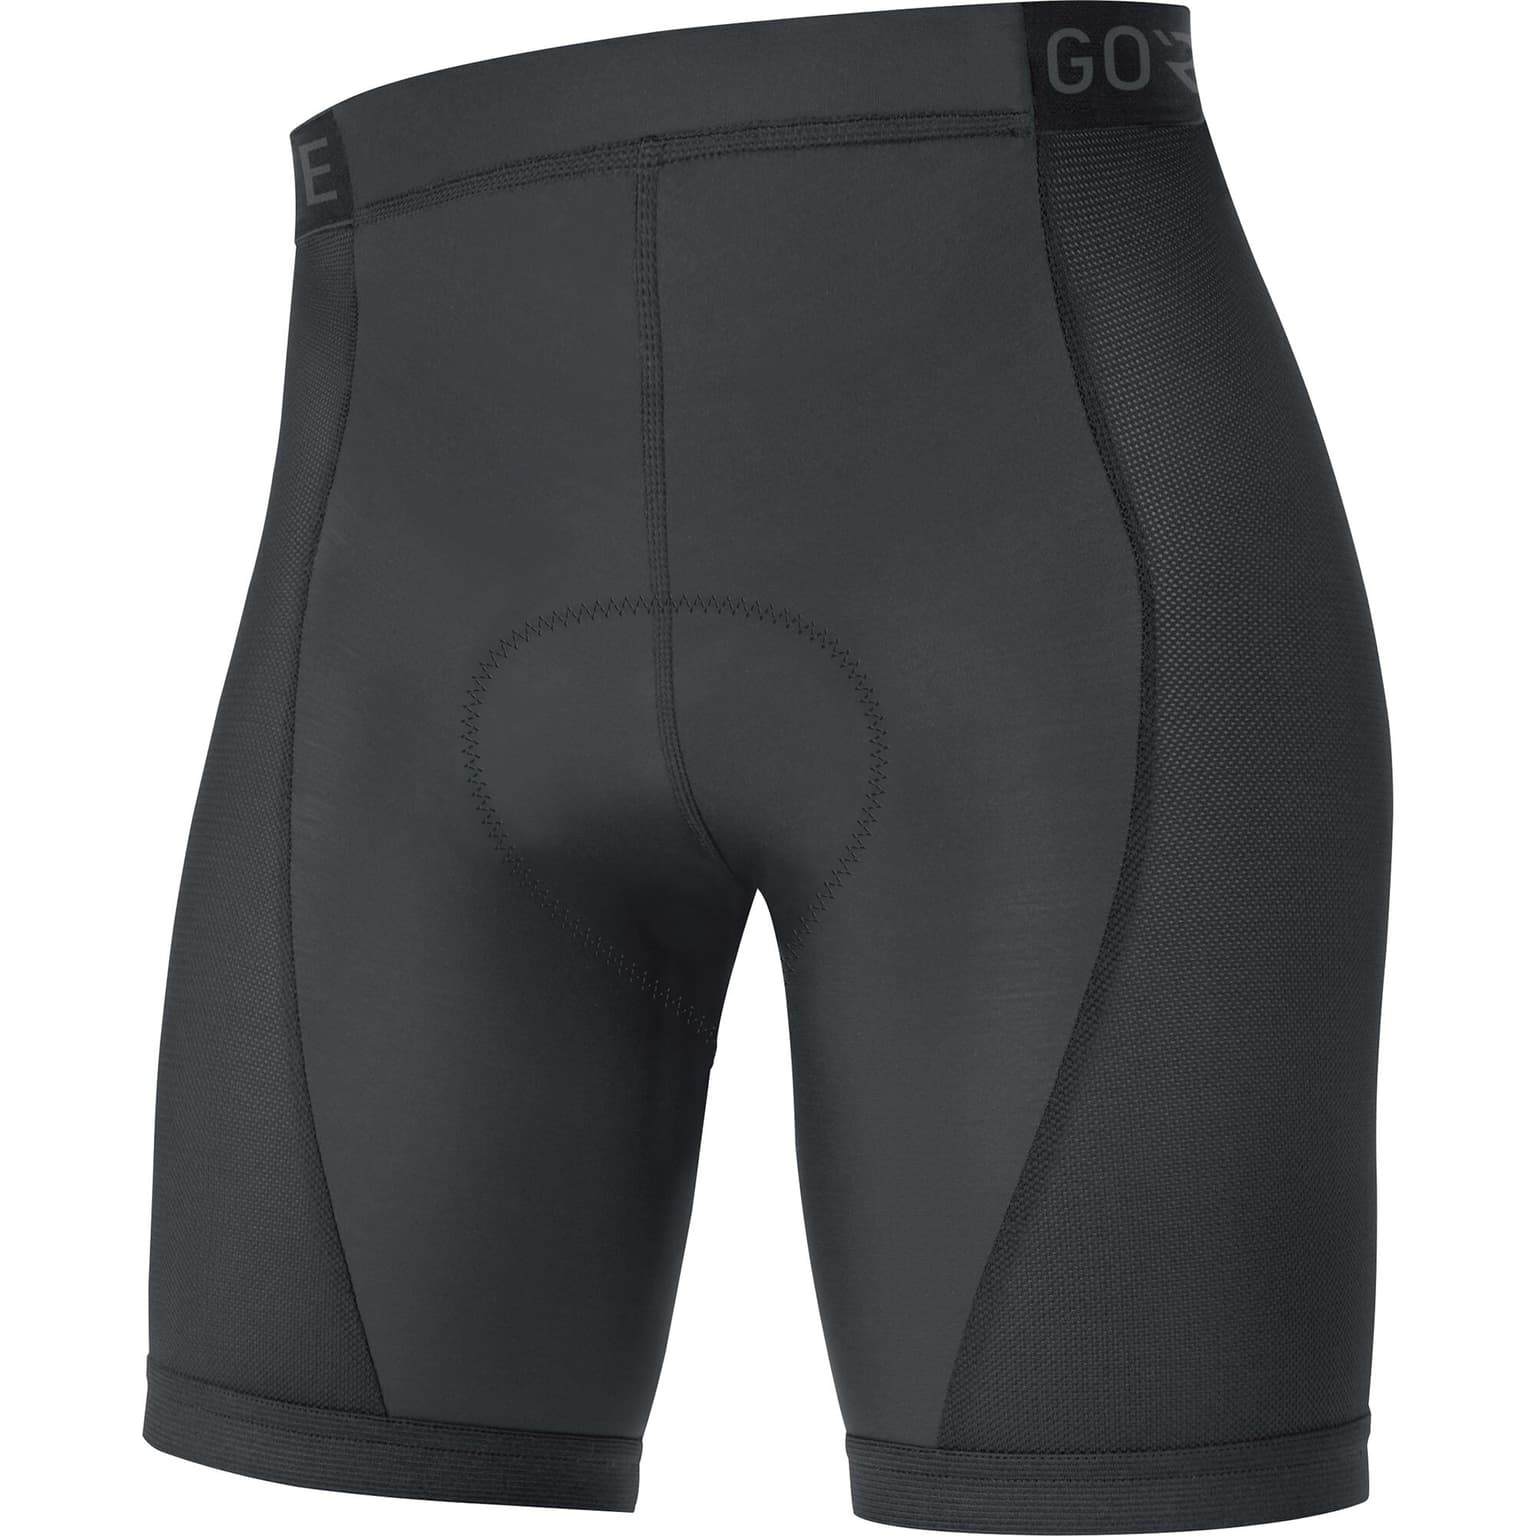 Gore Gore C3 Liner Short Tights+ Bike-Unterhose schwarz 1